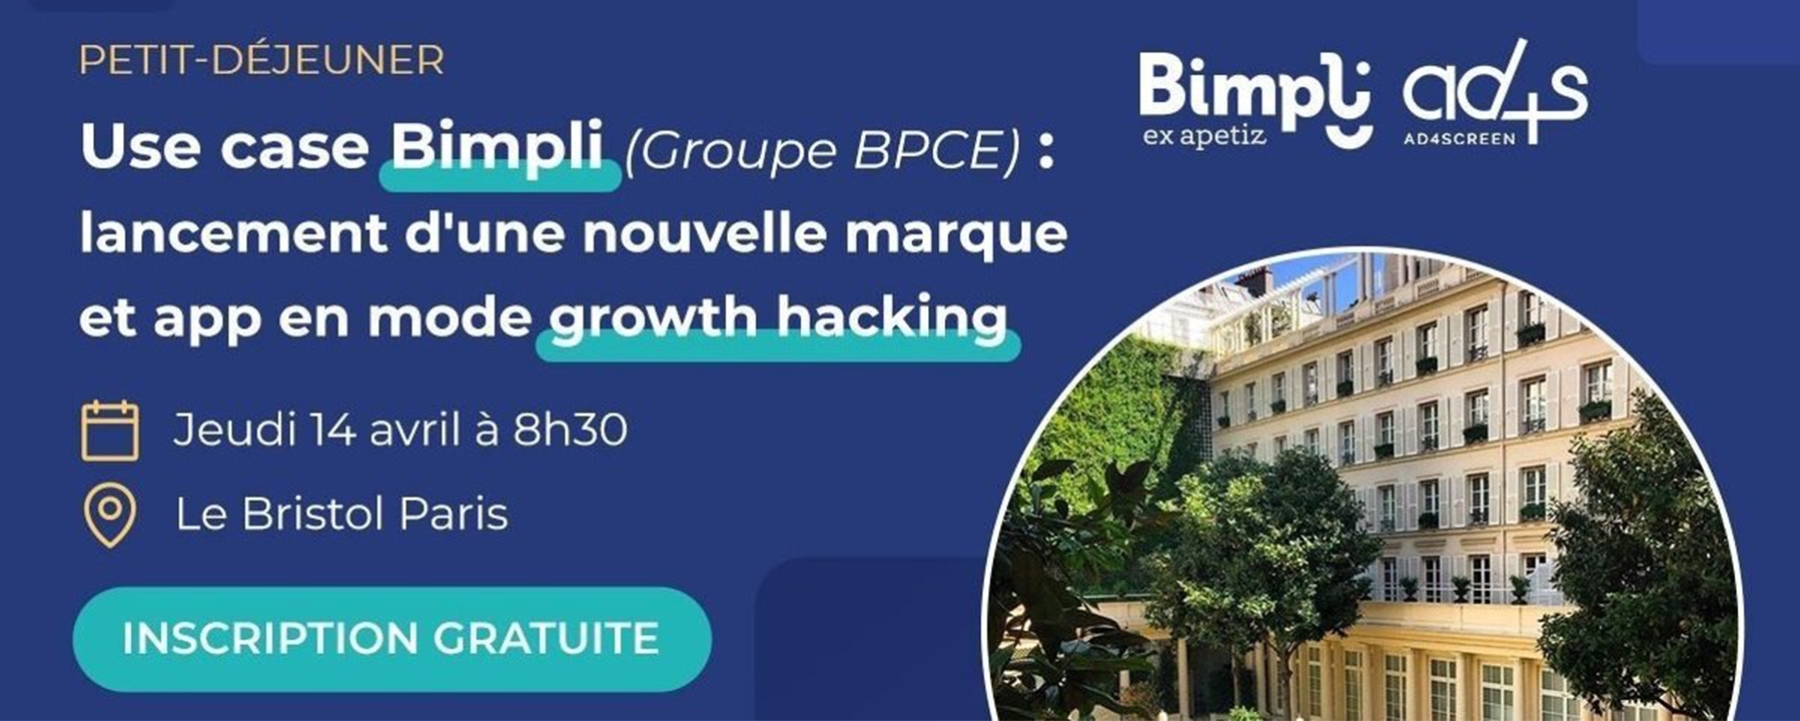 Use case Bimpli (Groupe BPCE) : Lancement d'une nouvelle marque et app en mode growth hacking